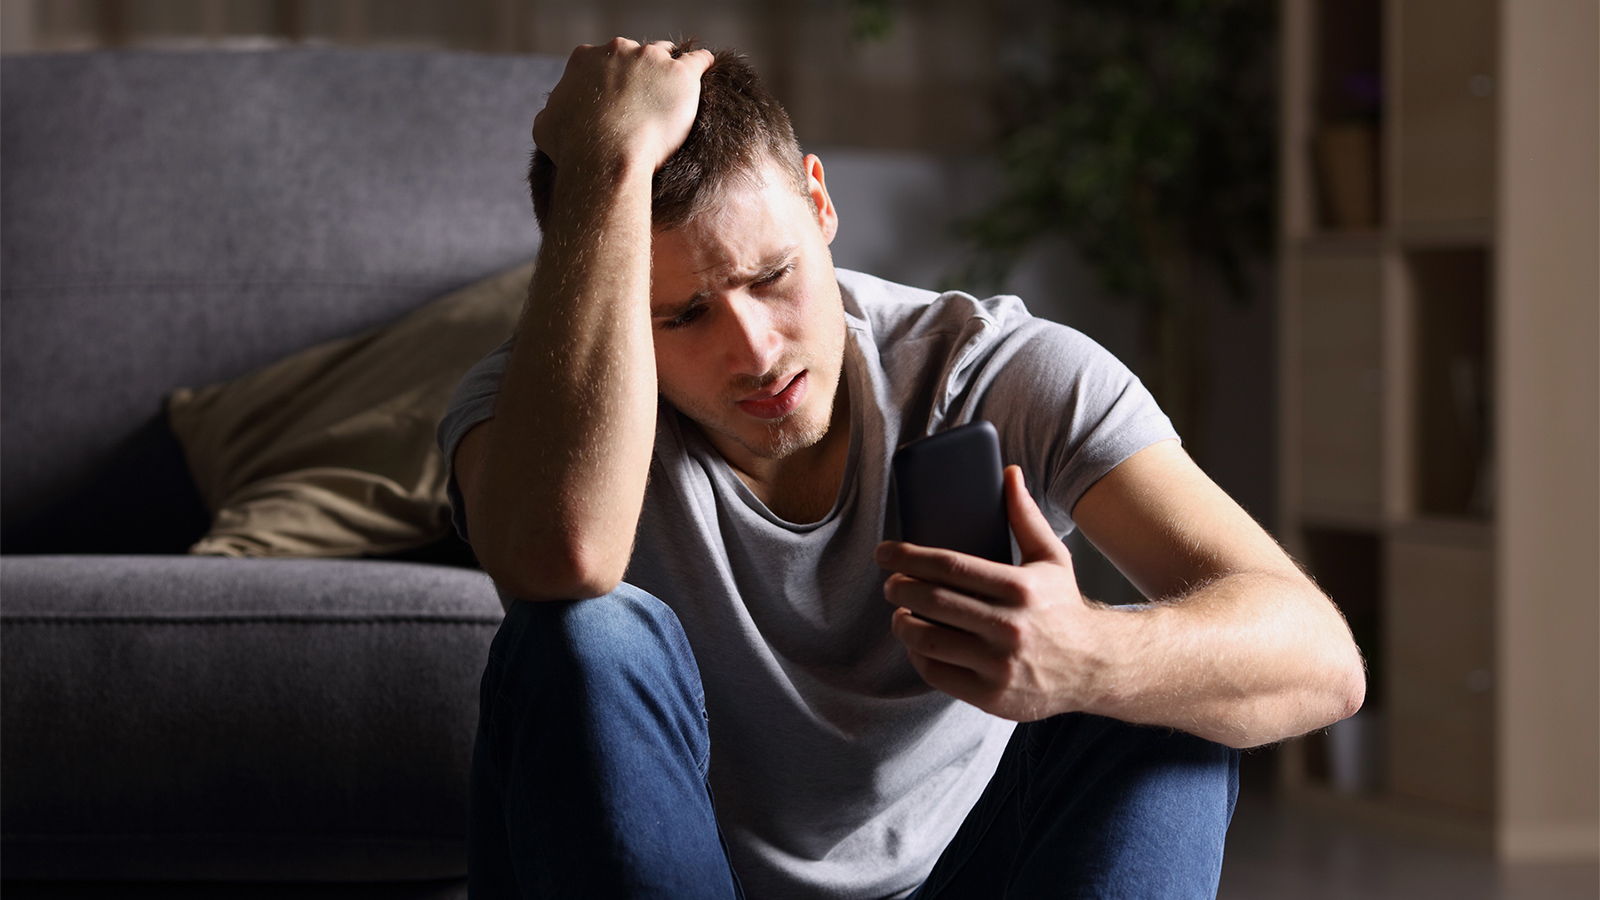 ‪دراسة: مواقع التواصل الاجتماعي قد تلعب دورا رئيسيا بتنامي القلق والاكتئاب بين المراهقين‬ (غيتي)